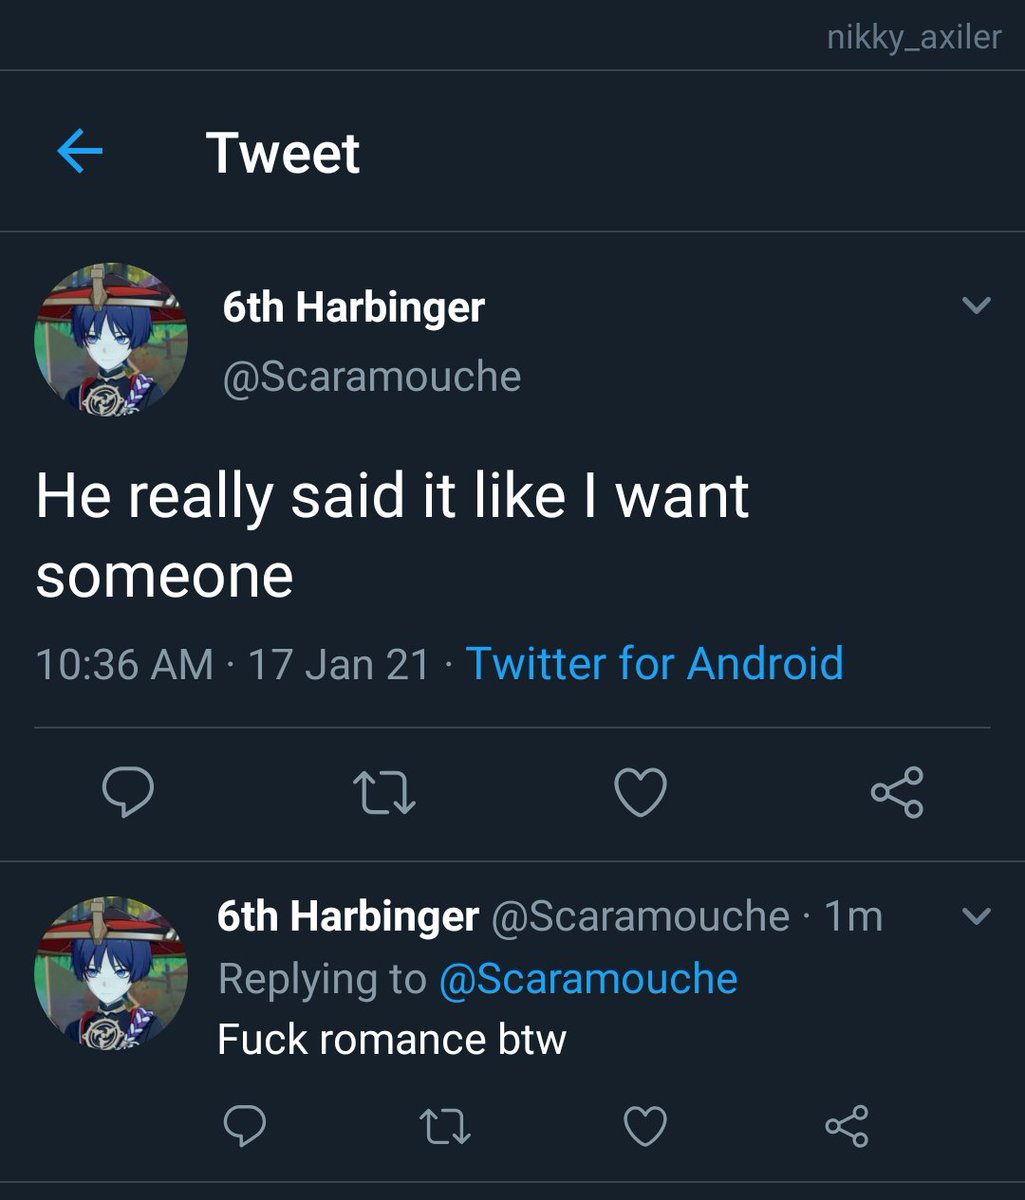 Fuck romance